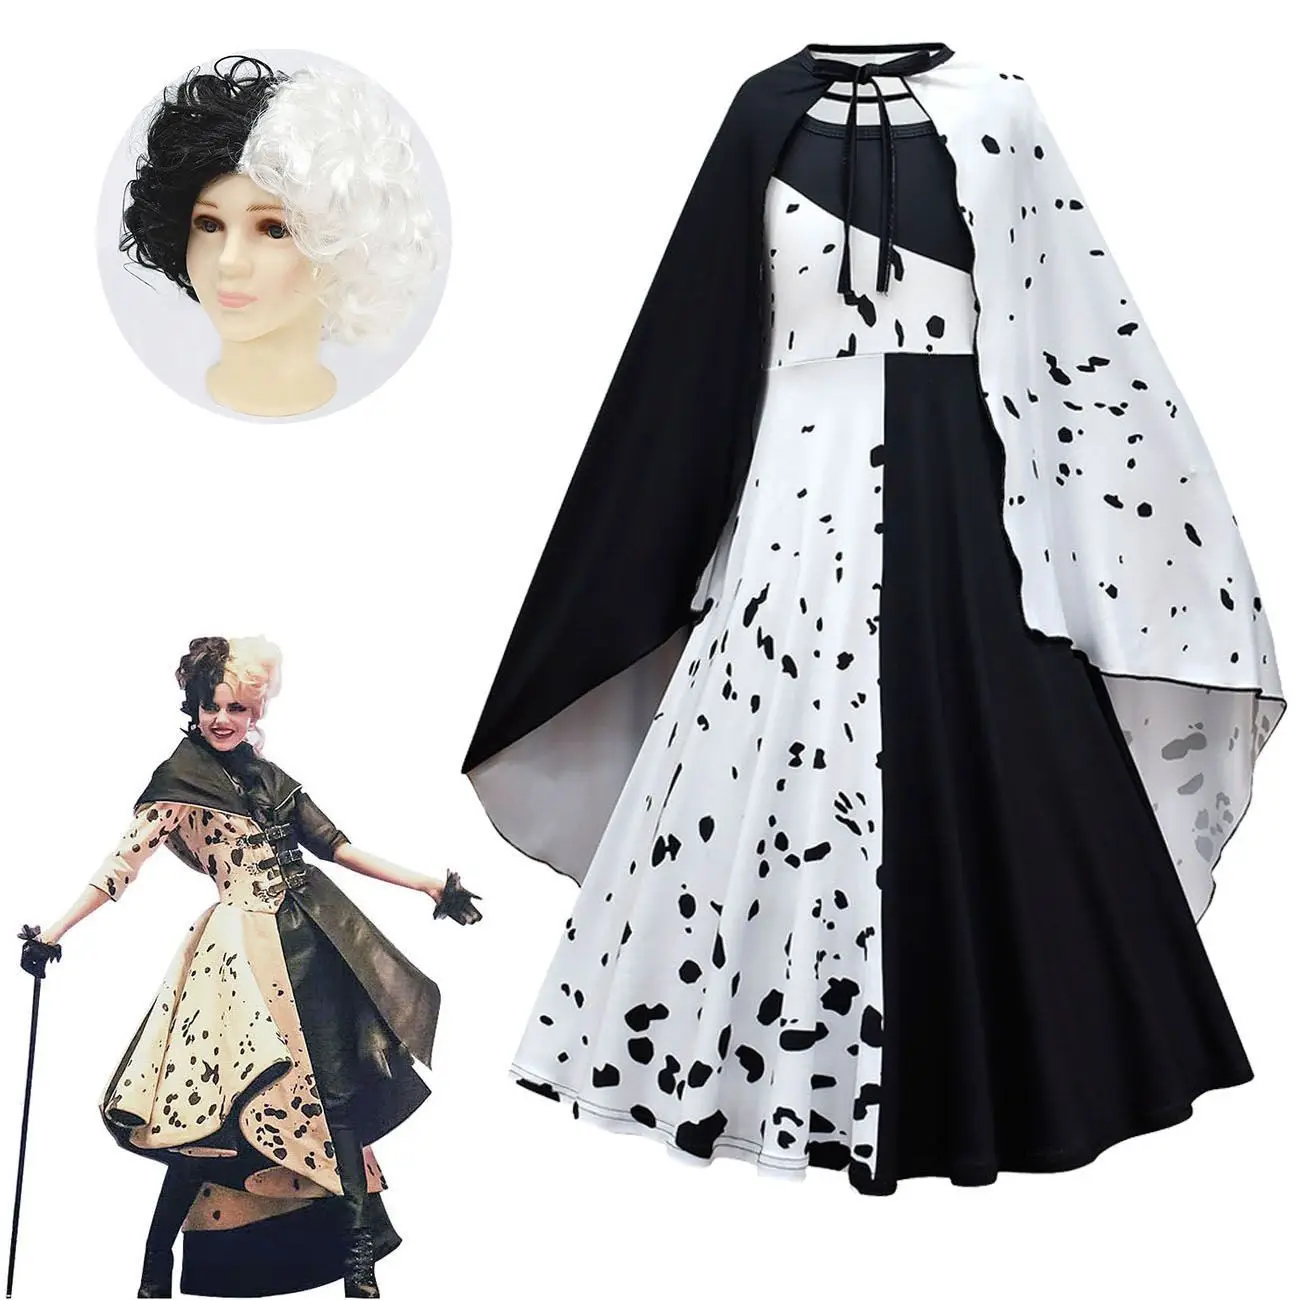 

Костюм принцессы Cruella De Vil для детей, одежда для косплея в стиле Хэллоуина, причудливые черные и белые платья горничной